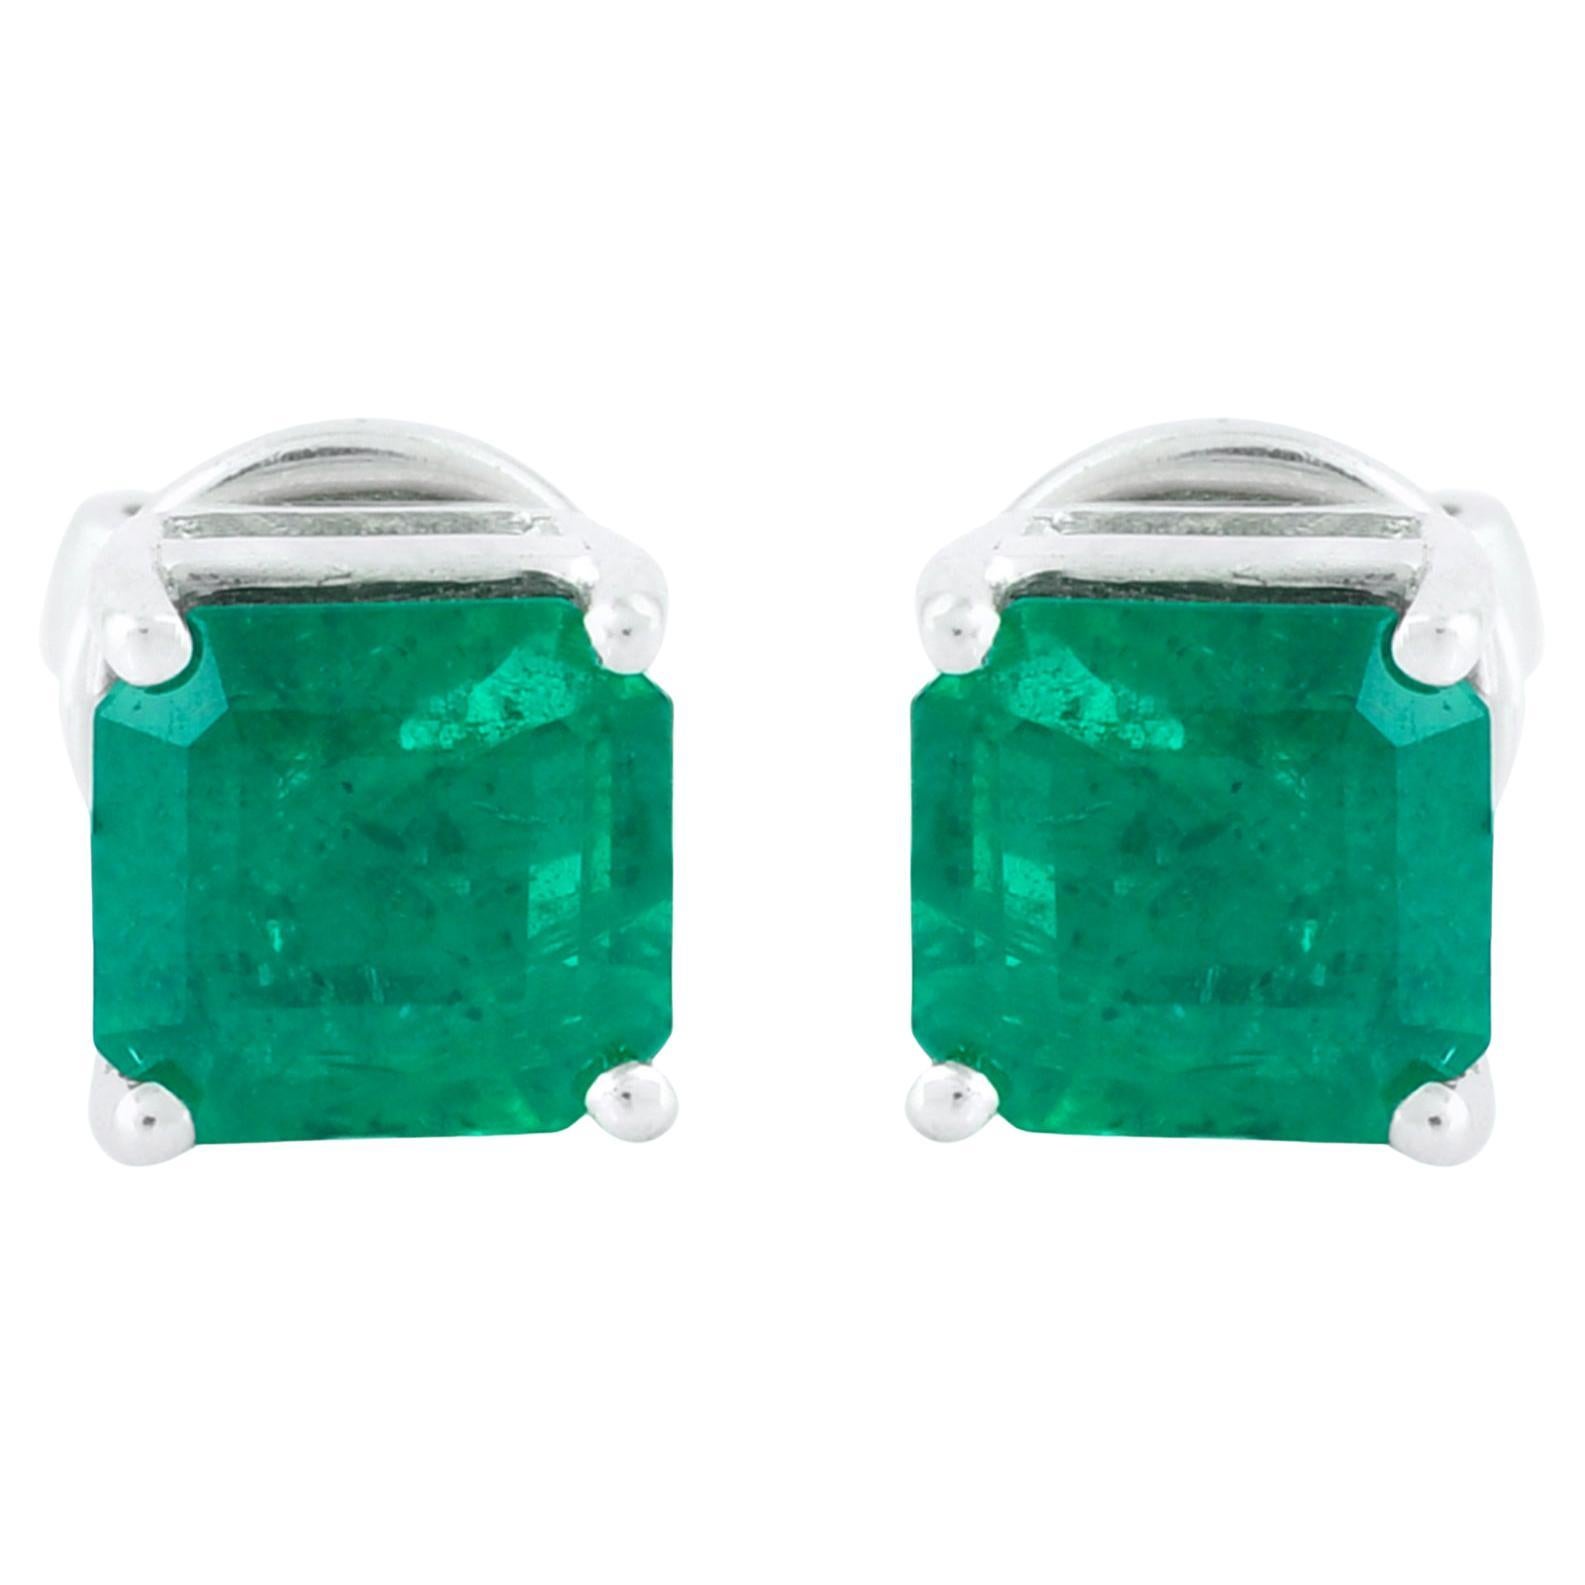 1.16 Carat Zambian Emerald Gemstone Stud Earrings Solid 18k White Gold Jewelry